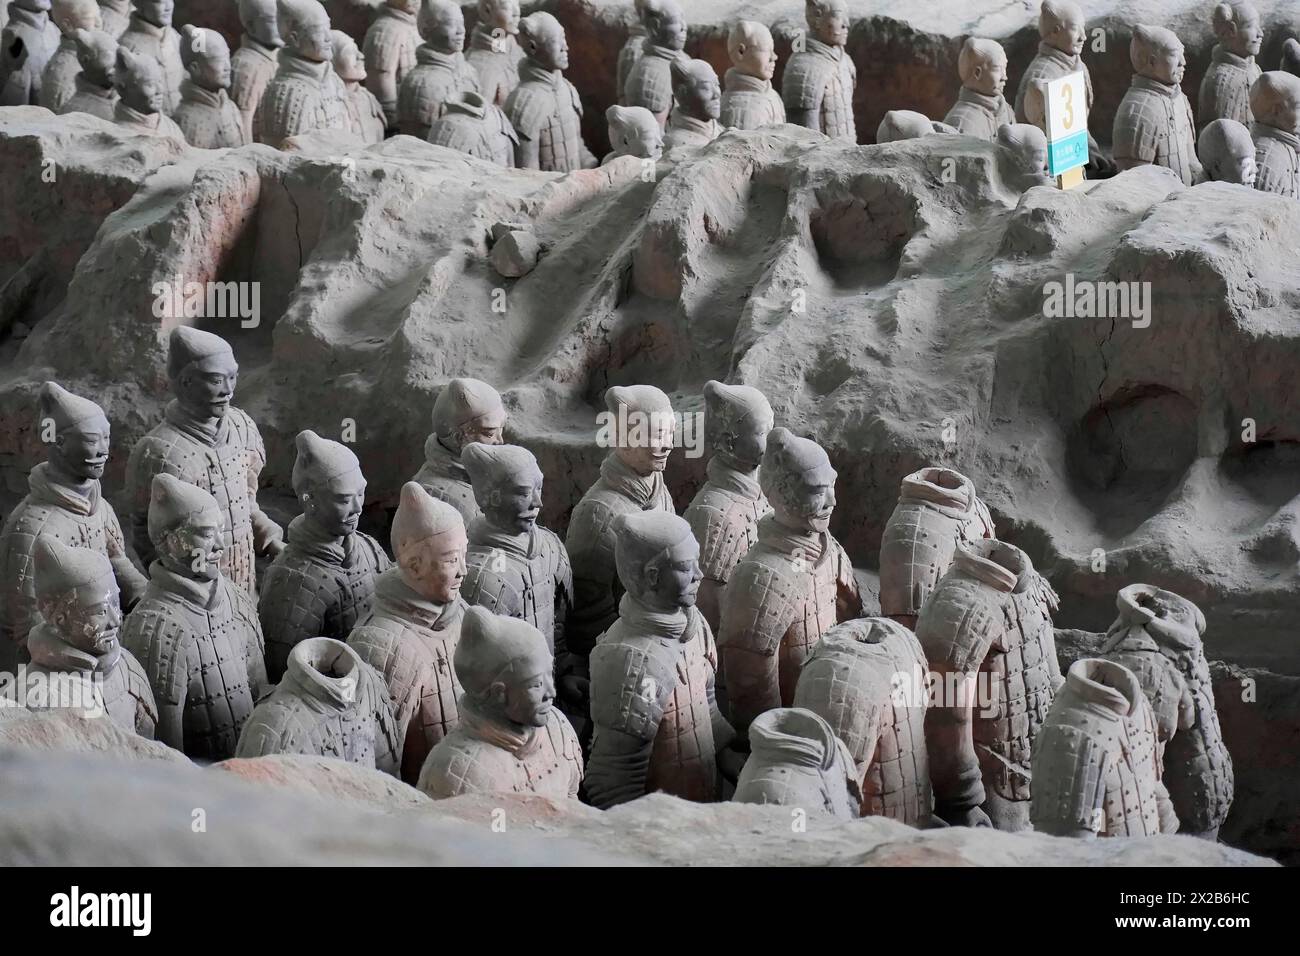 Figure dell'esercito di terracotta, Xian, provincia di Shaanxi, Cina, Asia, vista dettagliata dei soldati di terracotta in uno scavo, Xian, provincia di Shaanxi Foto Stock